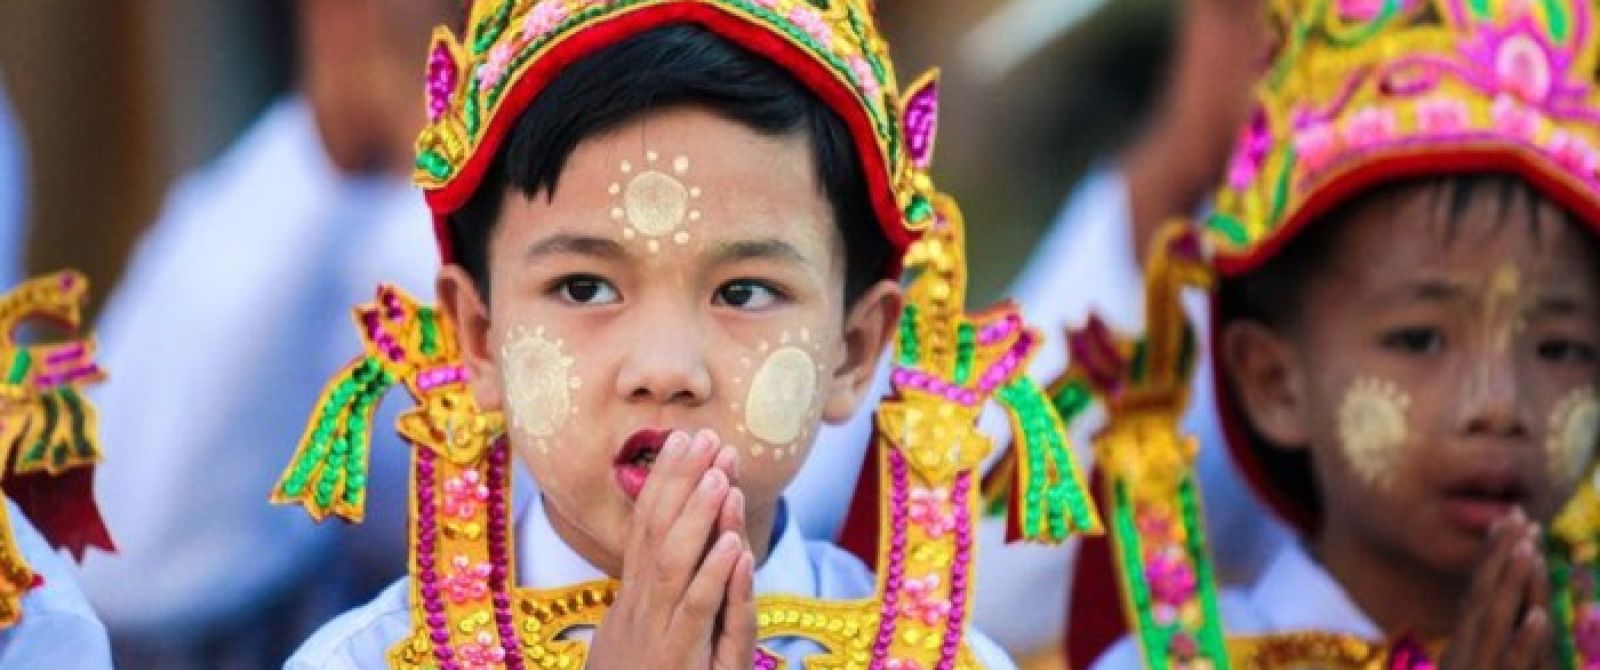 19 Días Visitando Vietnam, Myanmar Y Tailandia